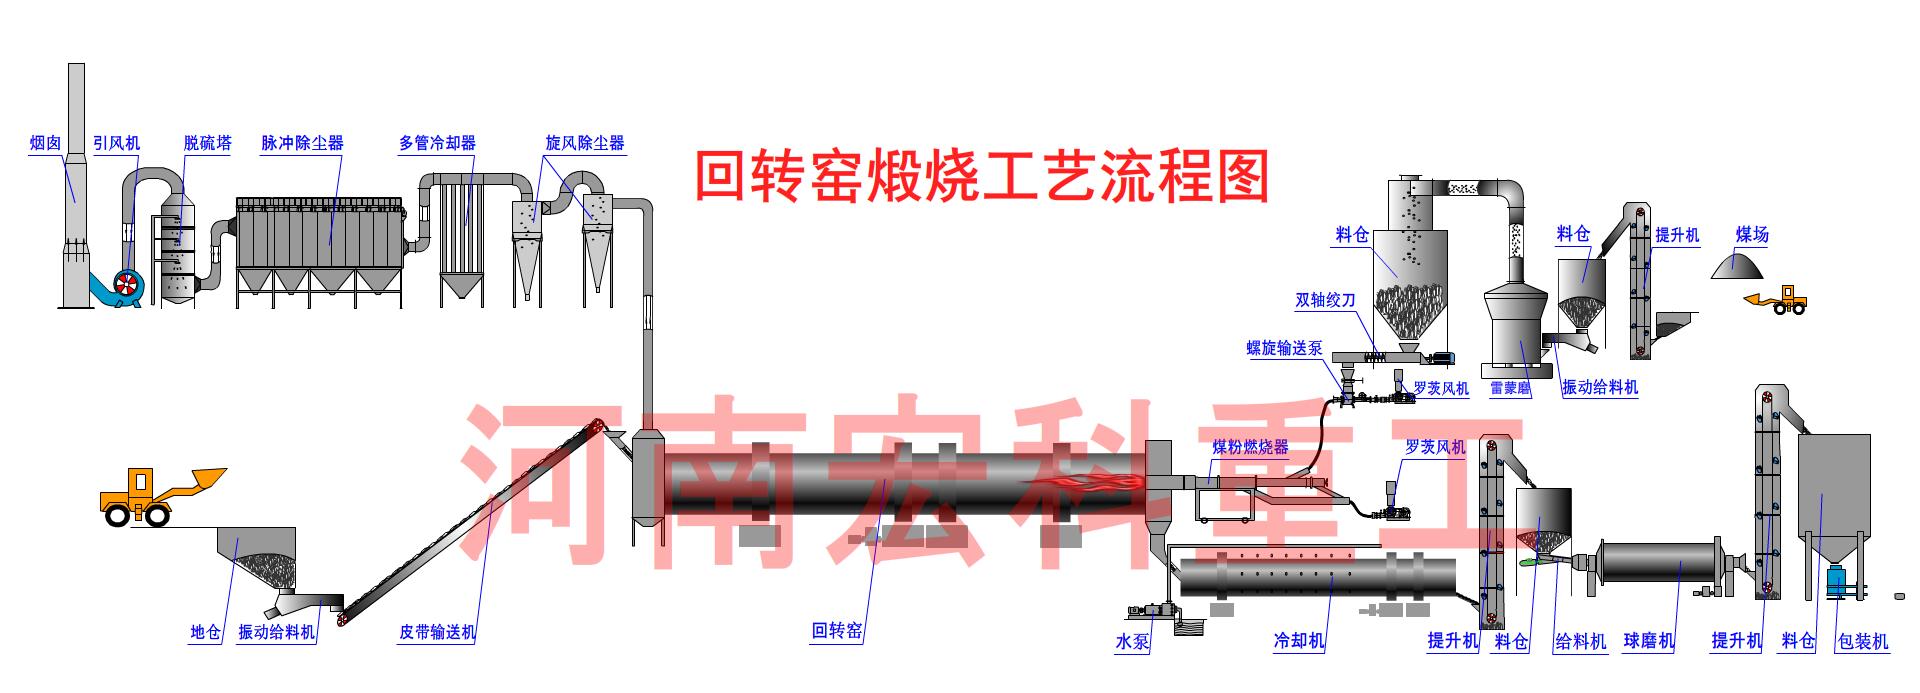 單段式煤氣發生爐工藝流程圖